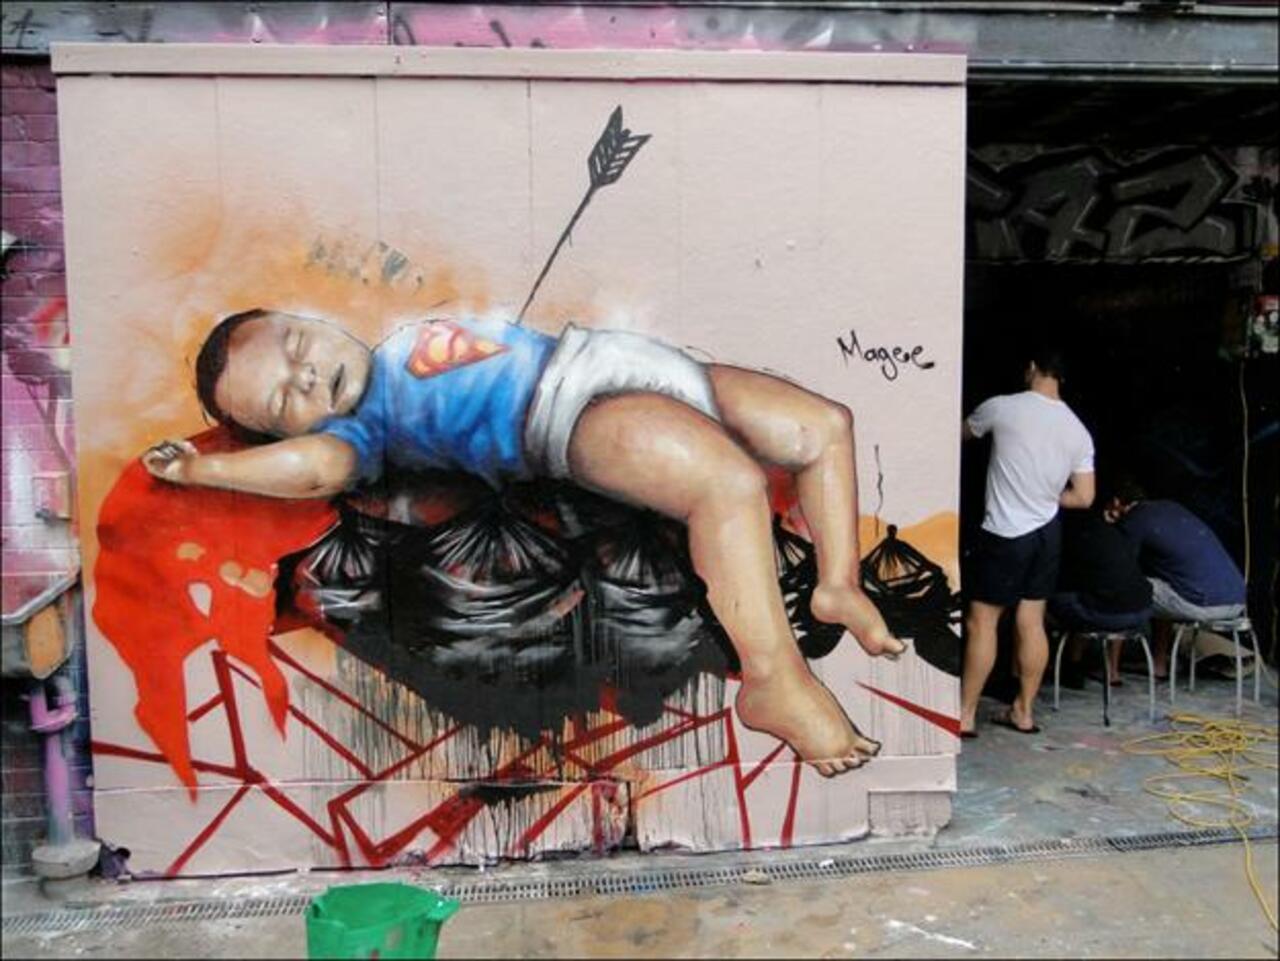 “@5putnik1: SuperBaby down.. #streetart #graffiti #art #funky #dope . : http://t.co/Pk3KLzLBm2”